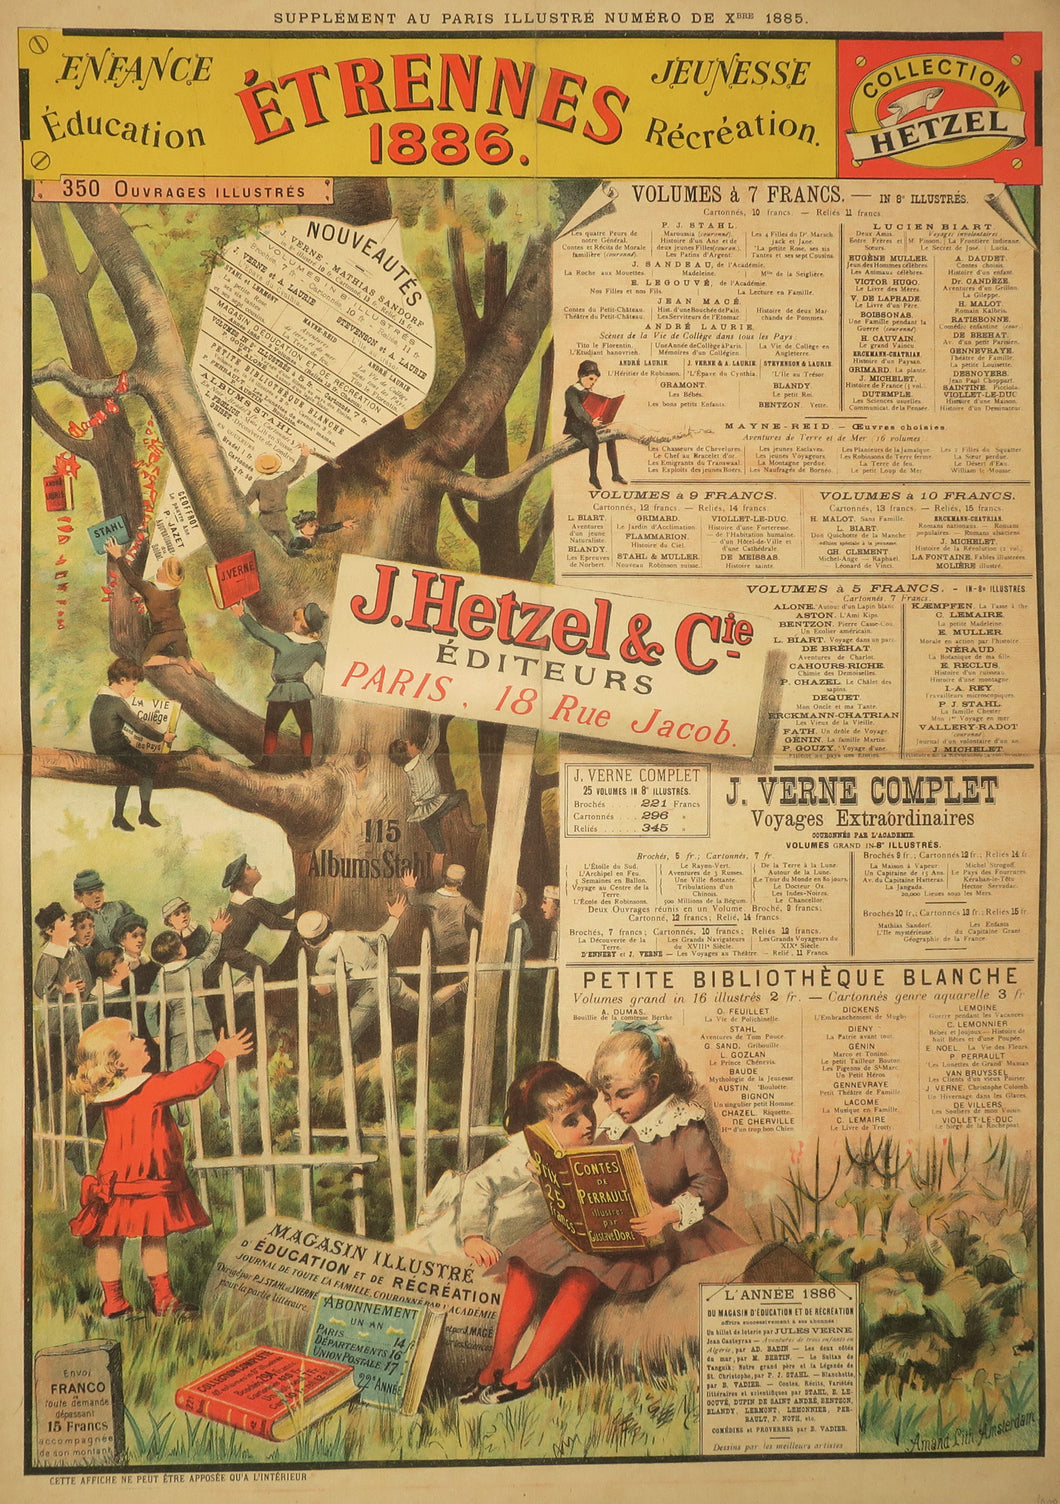 Affiche publicitaire J. Hetzel & Cie pour les Etrennes 1886, dite «L'Arbre de la connaissance».